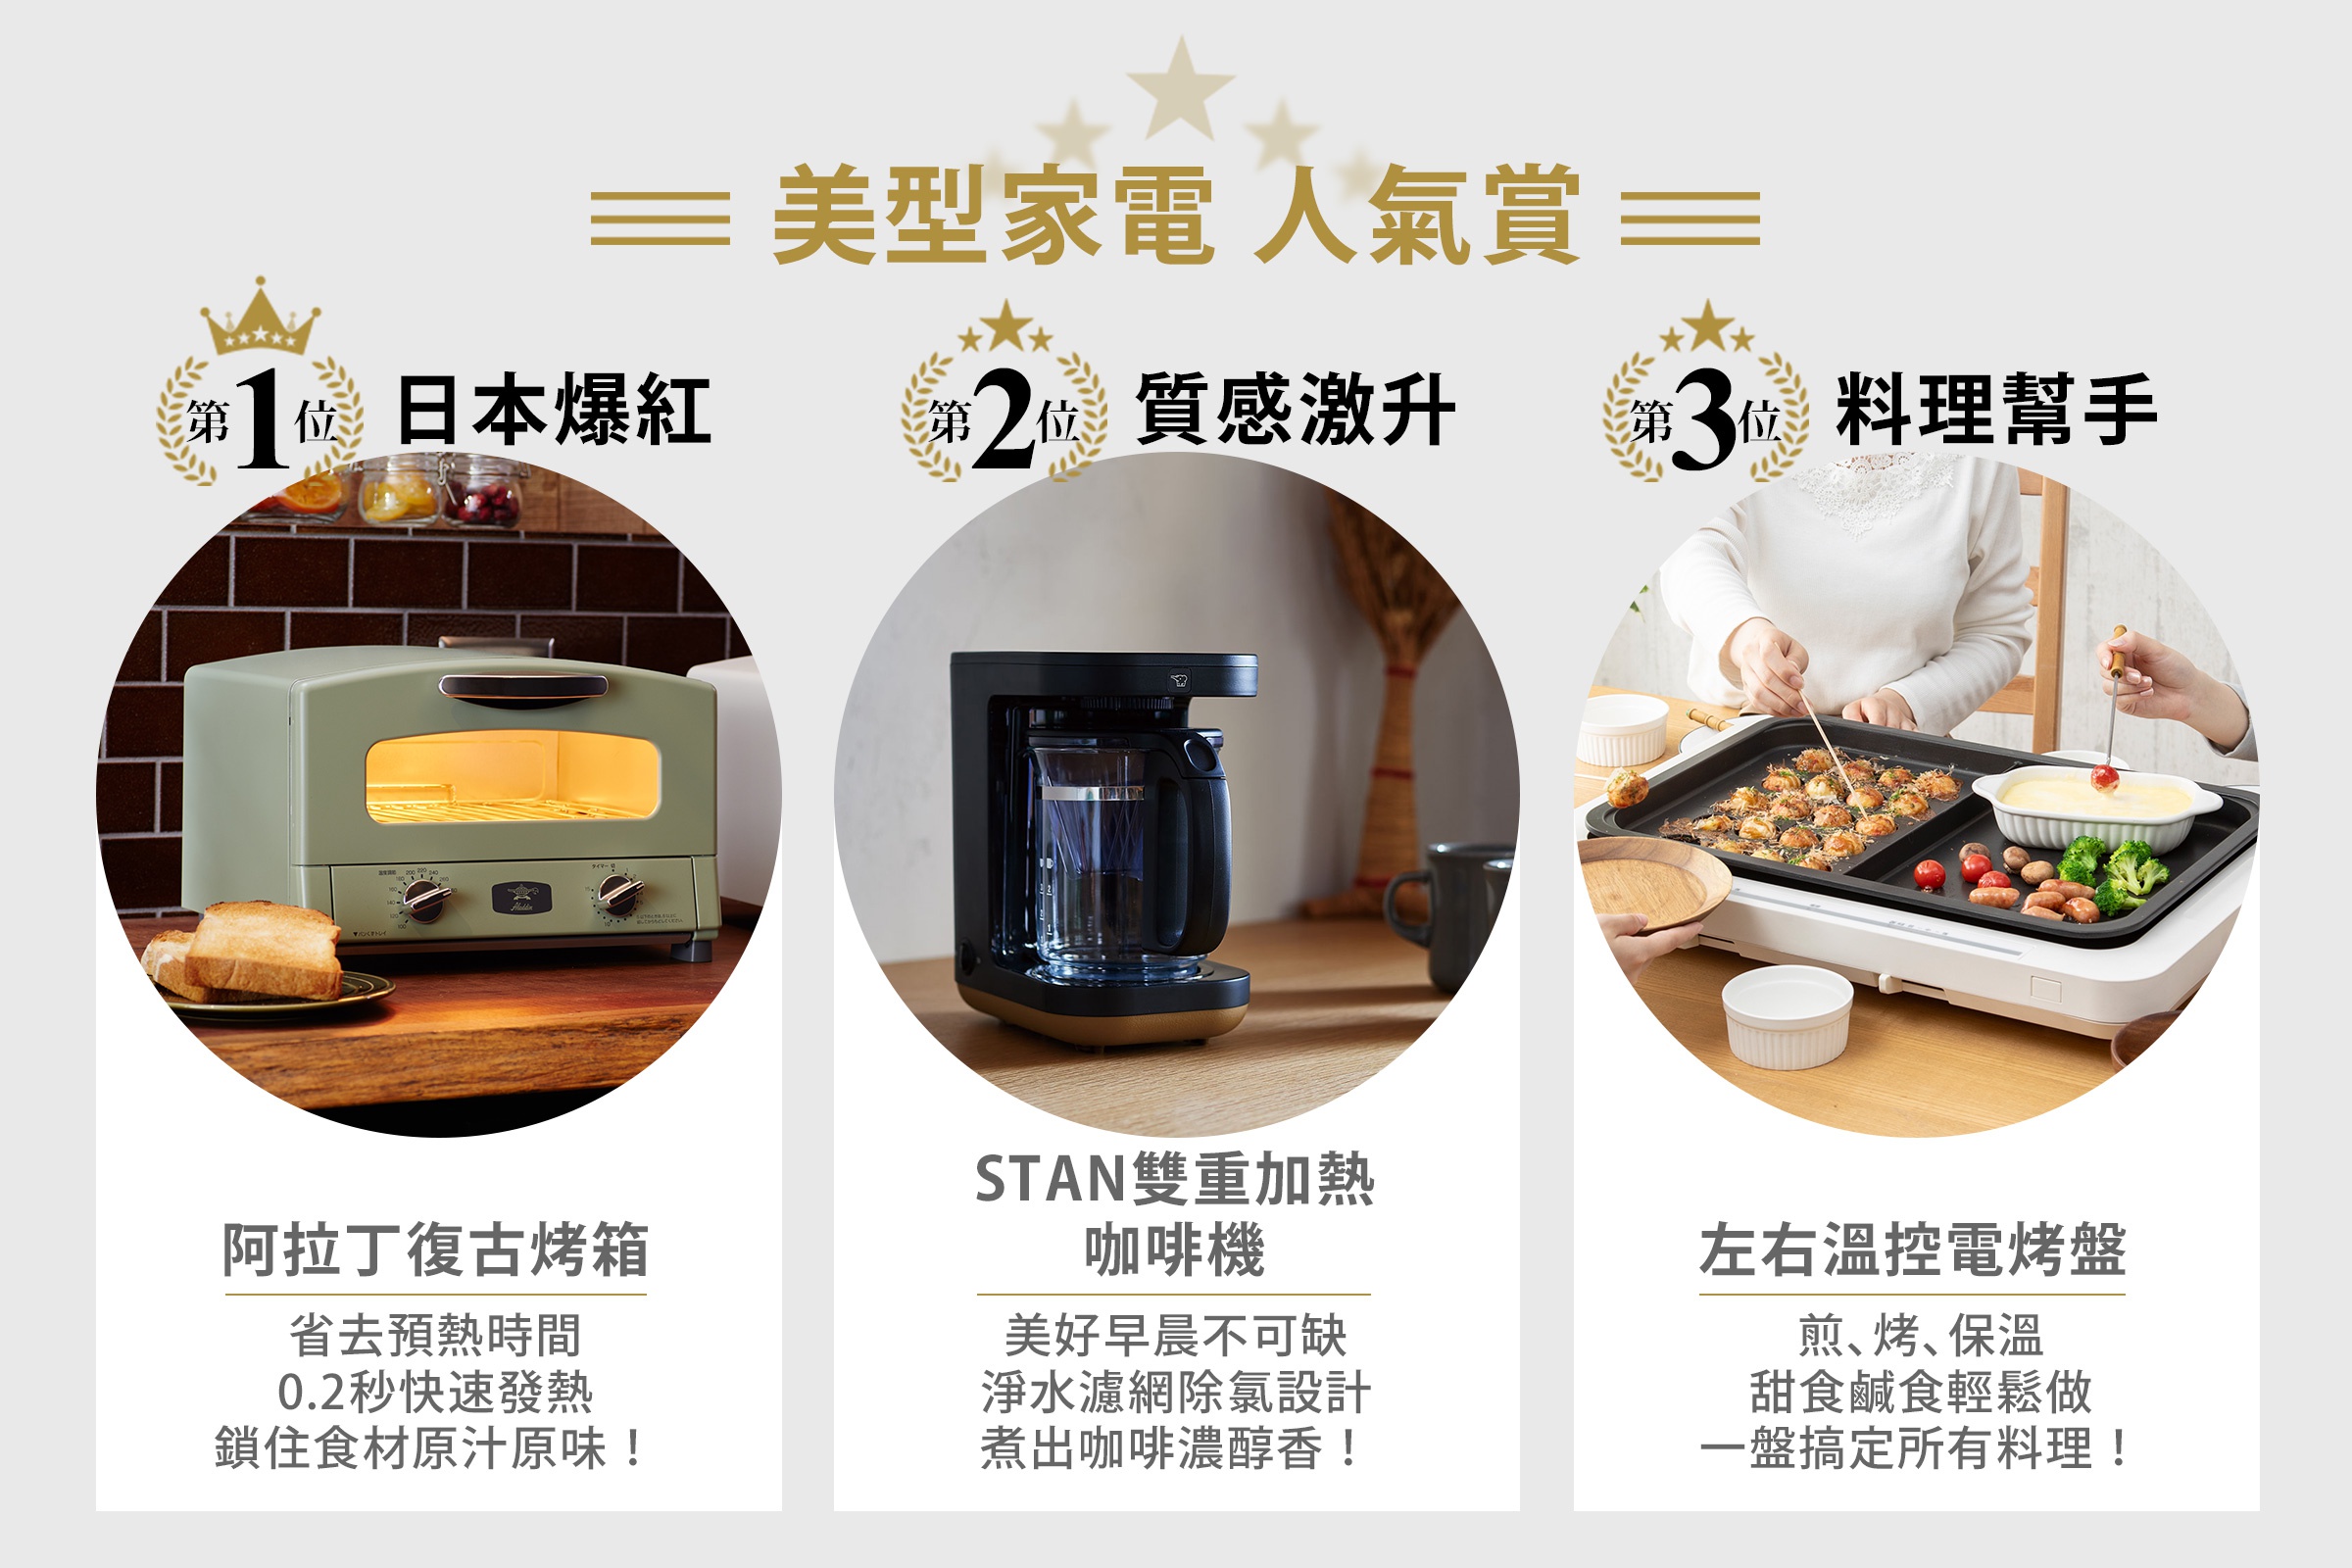 日本人氣家電
美型家電
阿拉丁復古烤箱
象印STAN雙重加熱咖啡機
IRIS OHYAMA左右溫控電烤盤